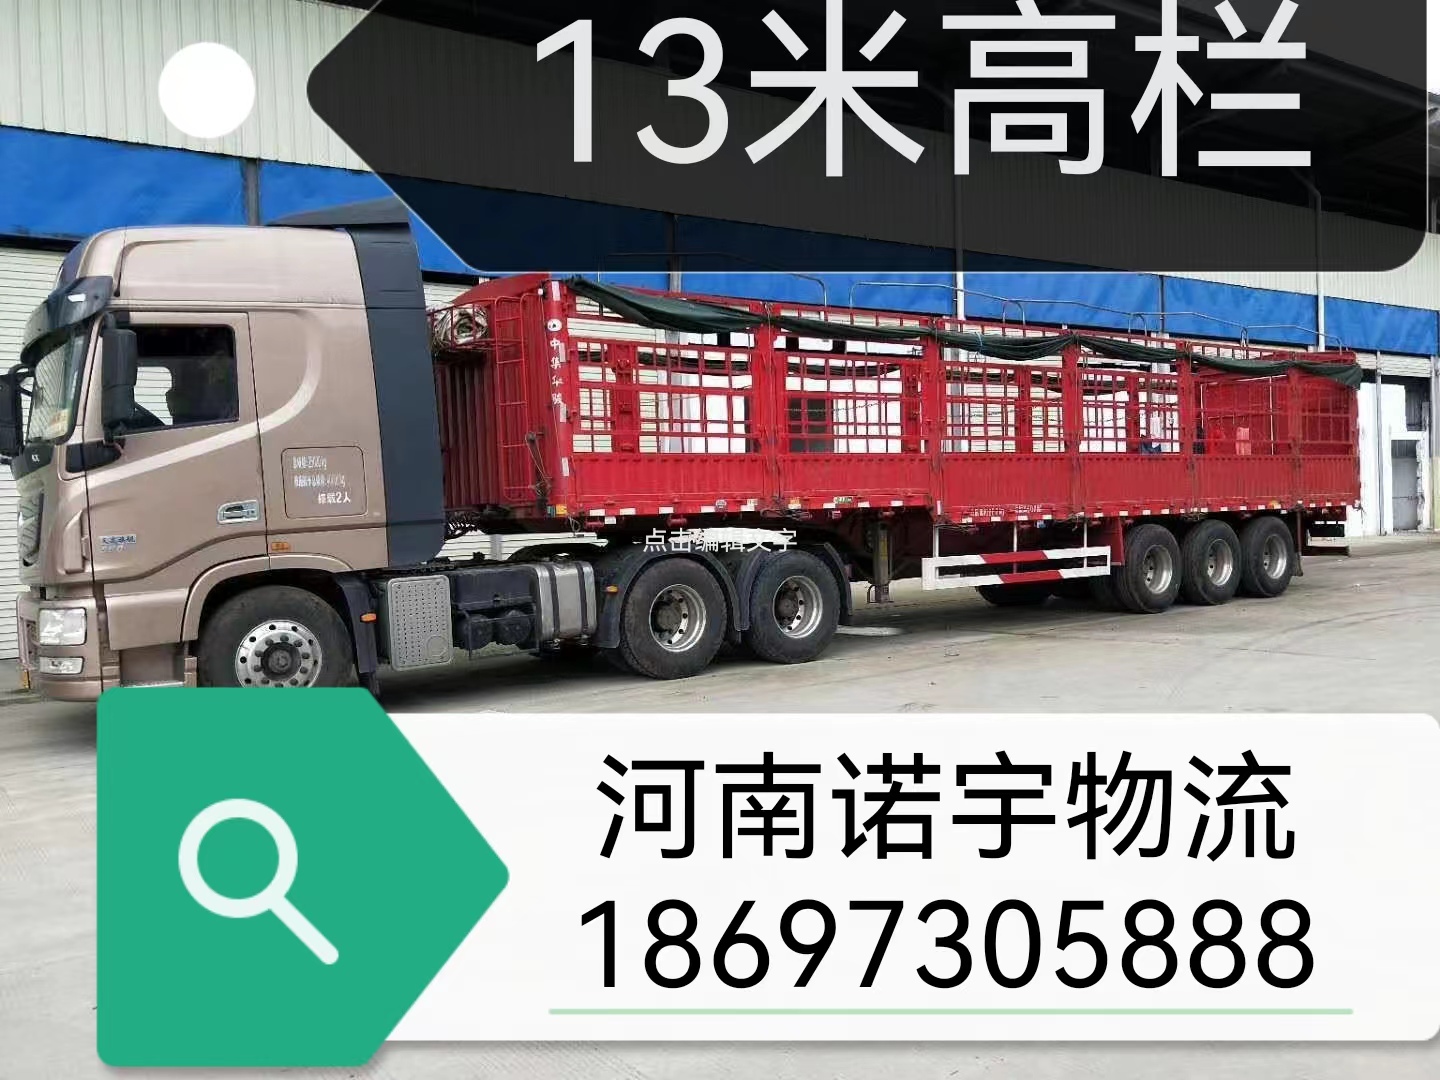 河南郑州到苏州重型设备运输  整车专线 零担货运全国公司报价电话   郑州至苏州大件长途物流